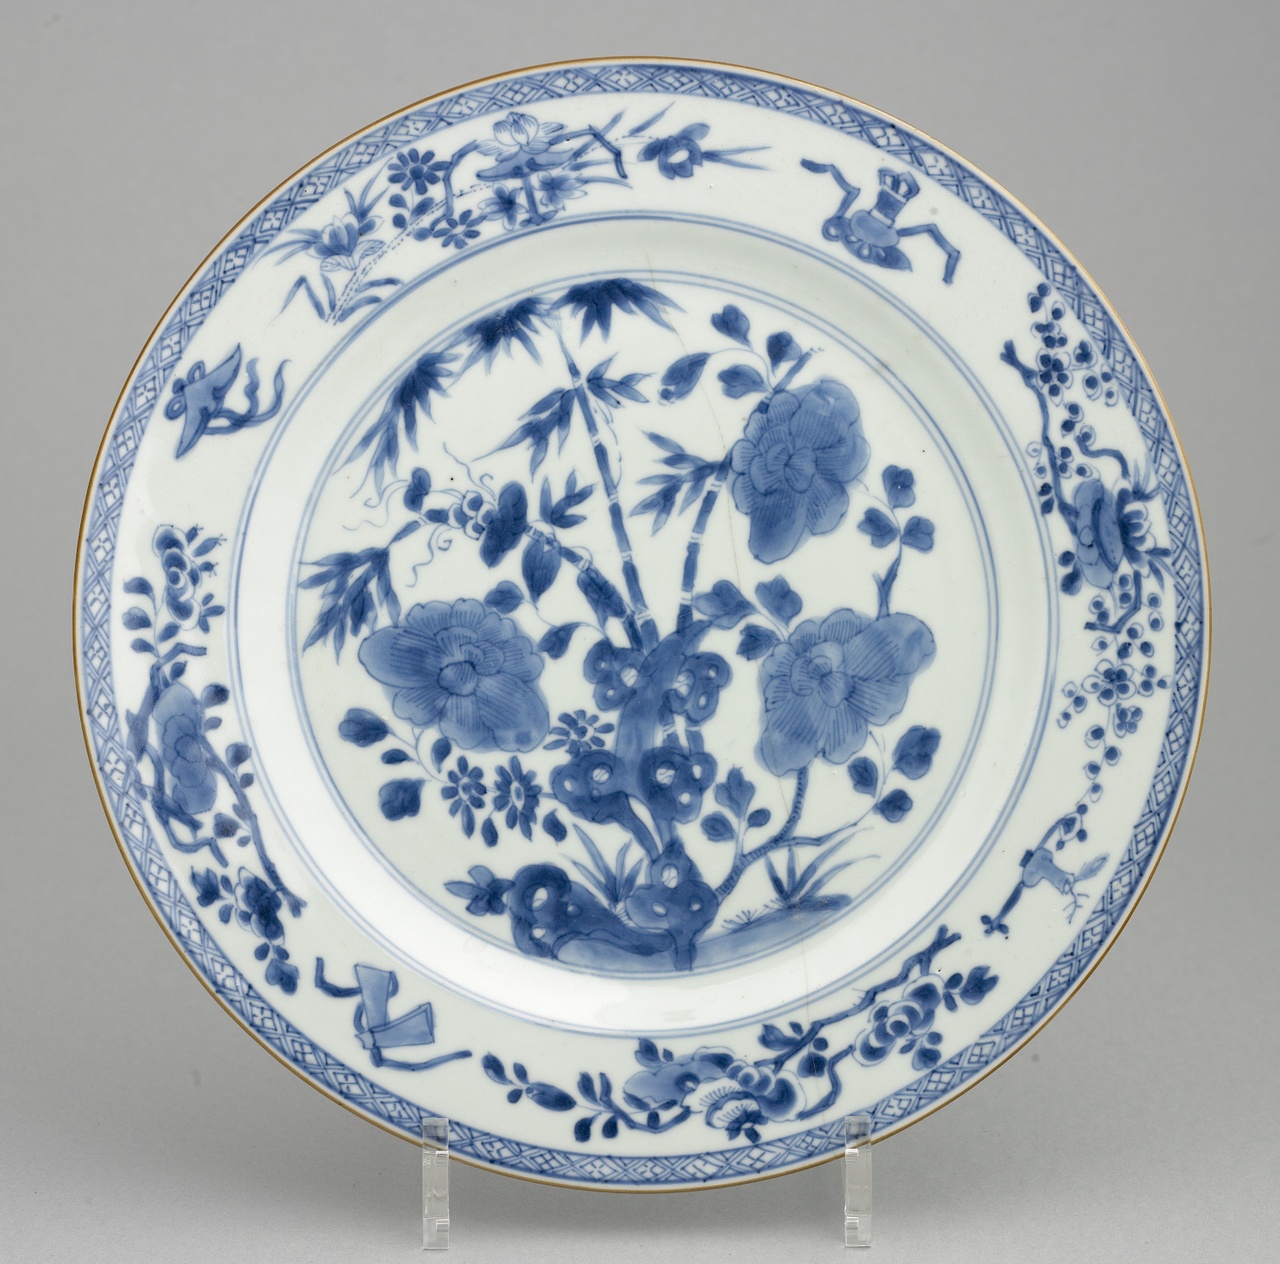 Porseleinen bord met bloemdecor, ca 18e eeuw